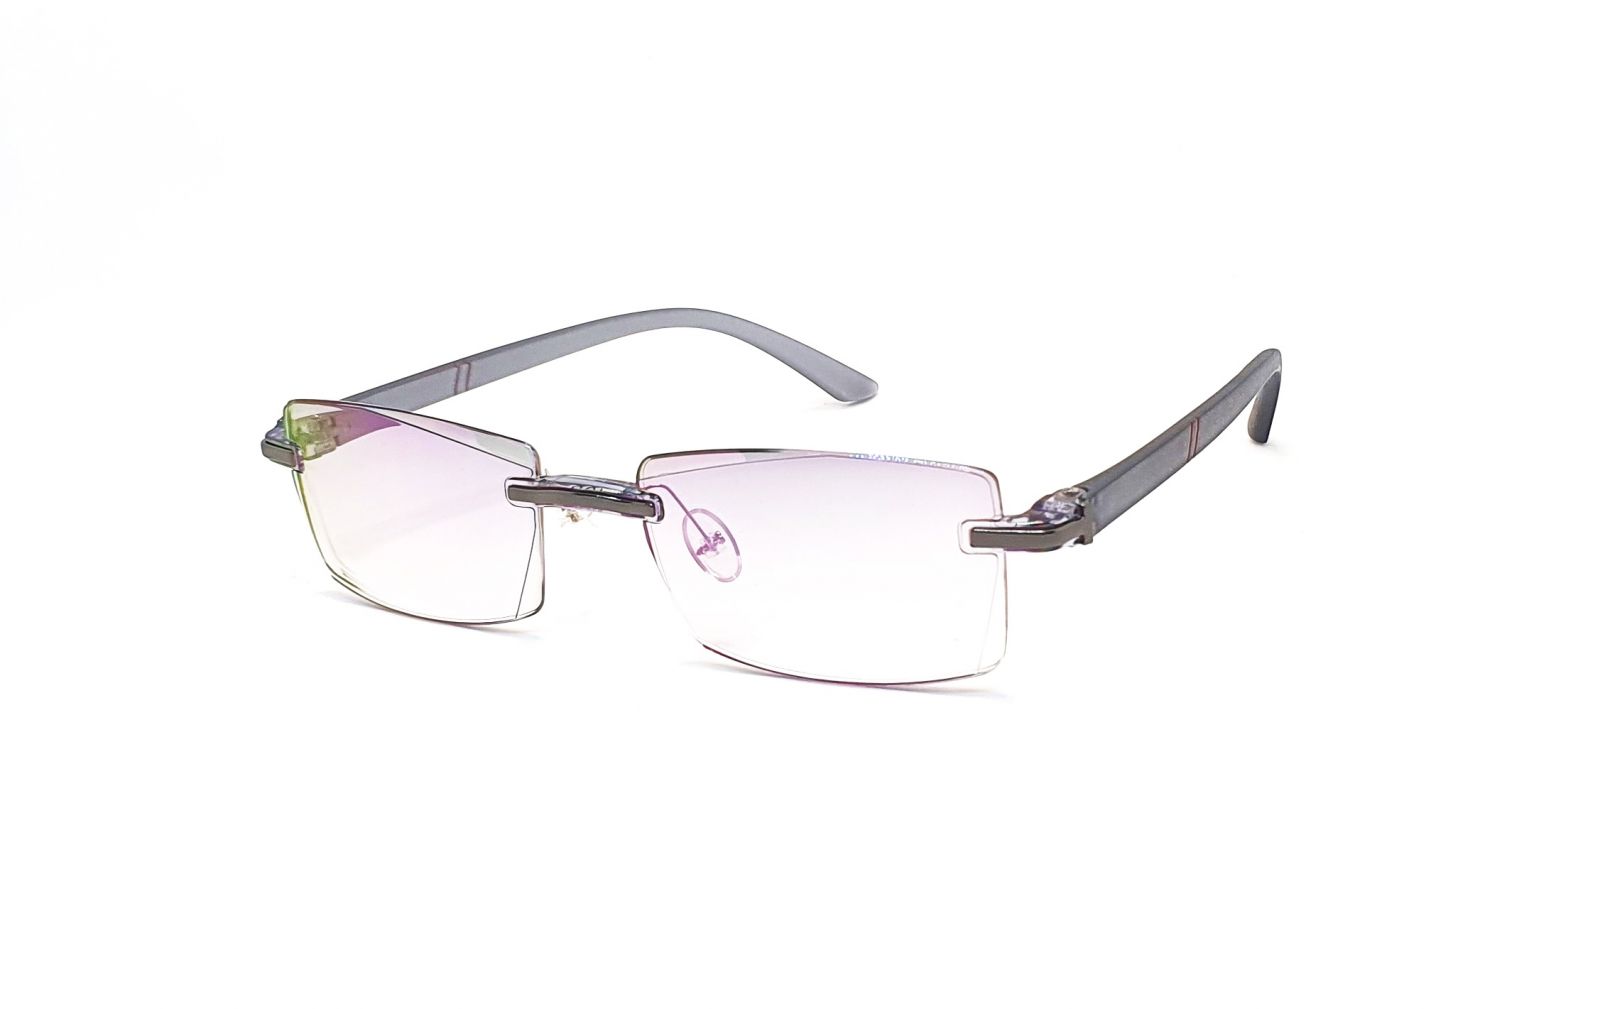 Bezrámečkové dioptrické brýle 346 / -2,00 s antireflexní vrstvou